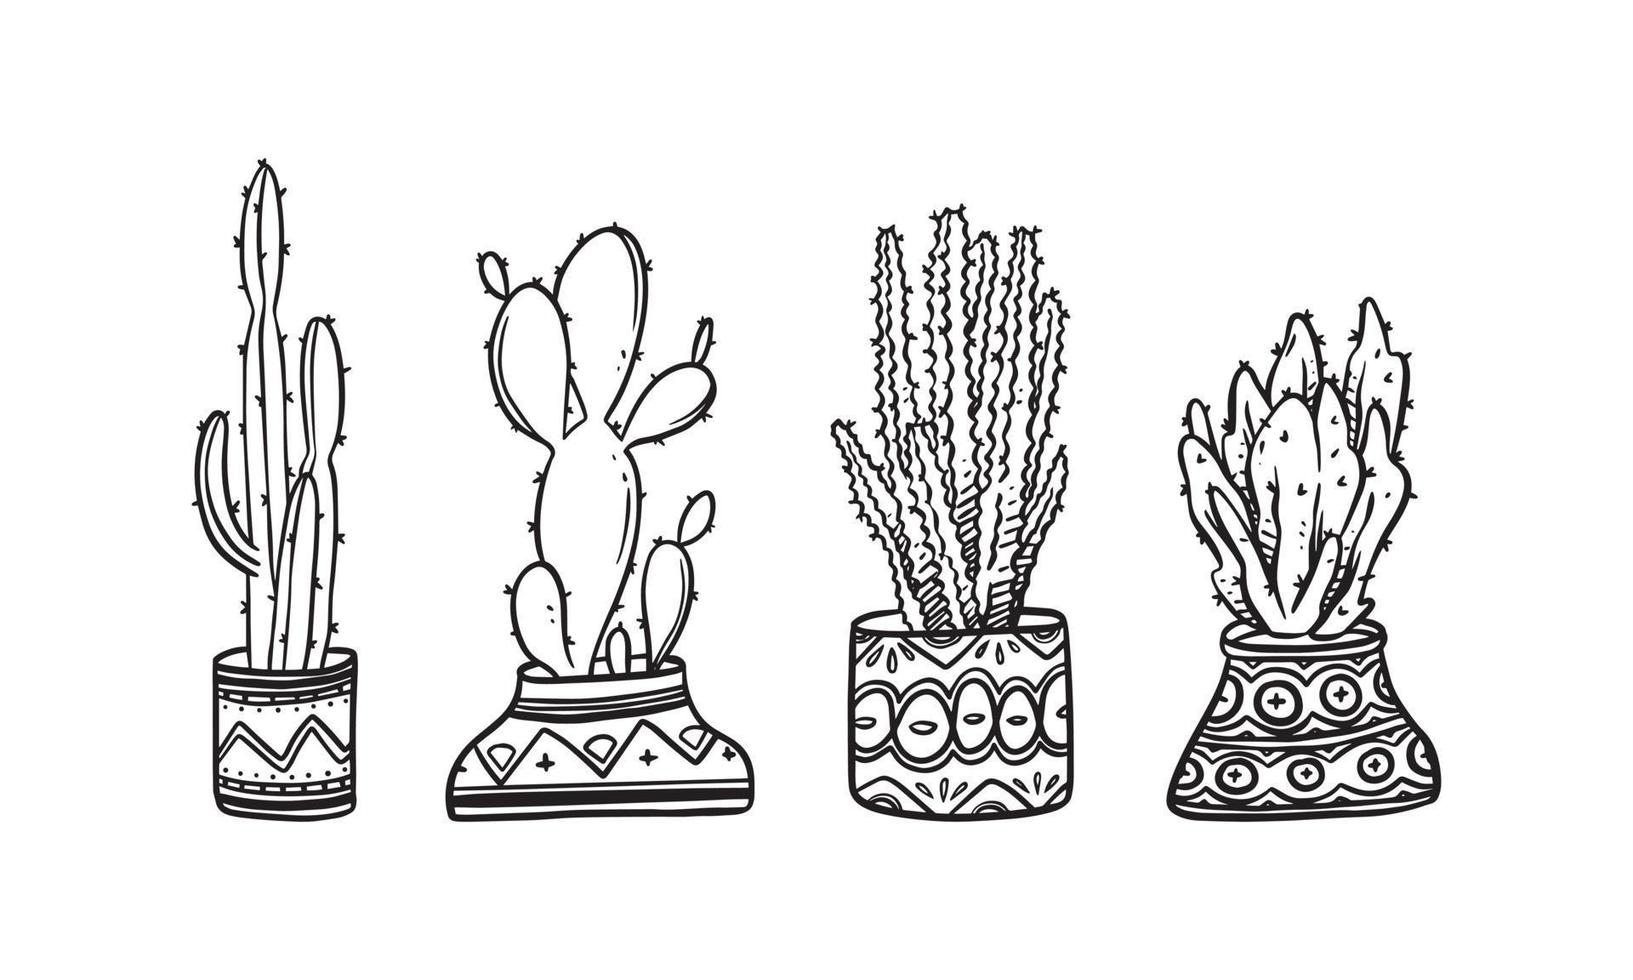 uppsättning av krukväxt handritad vektorillustration, växtisolerade grafiska element för design, kaktusväxtillustration för att skapa romantisk eller vintage design. vektor